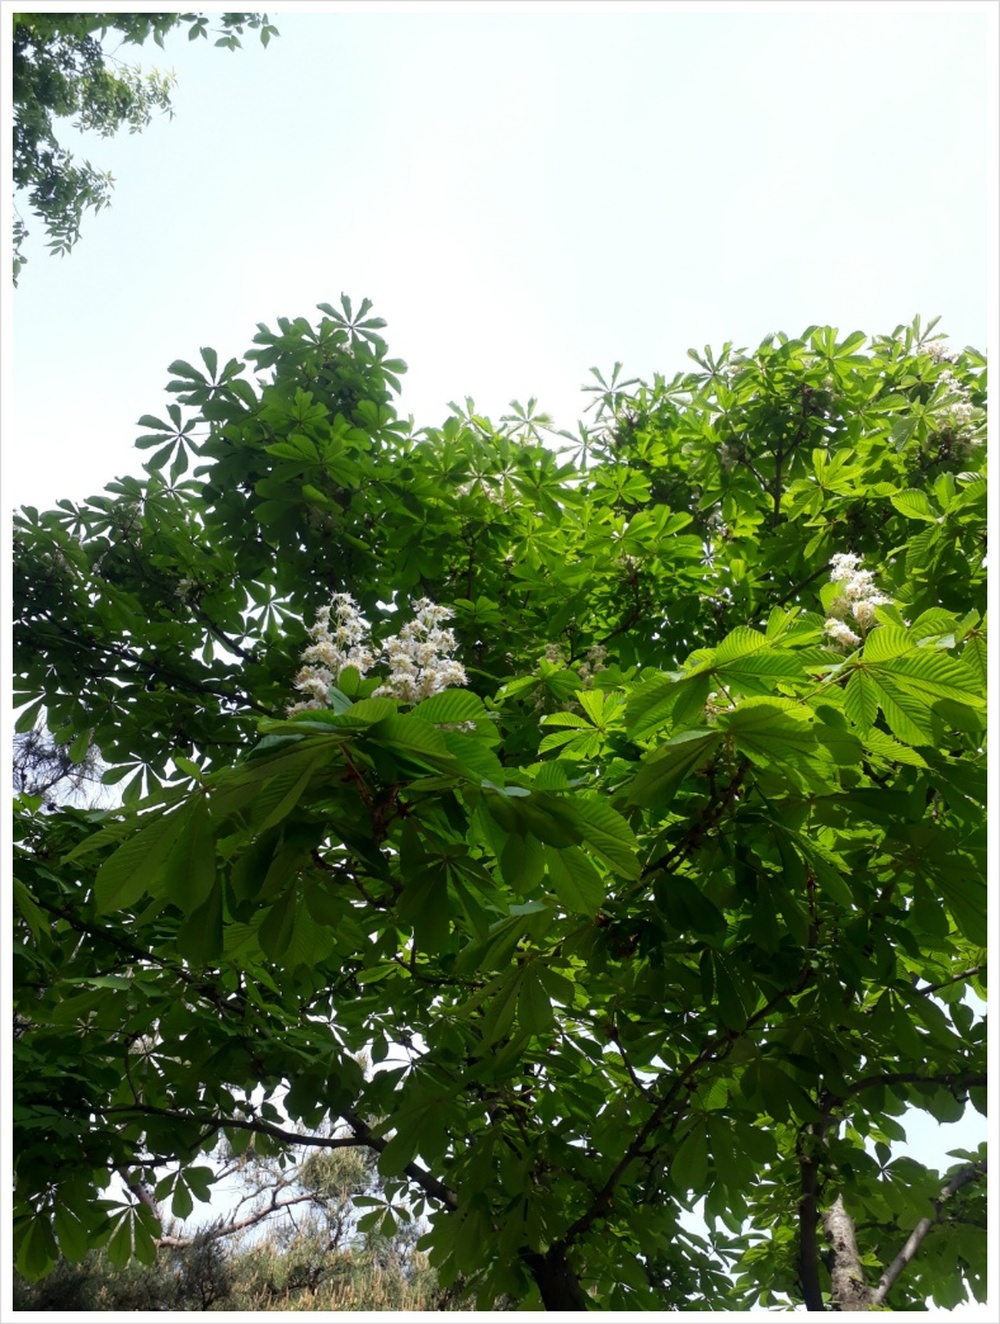 칠엽수(마로니에나무)